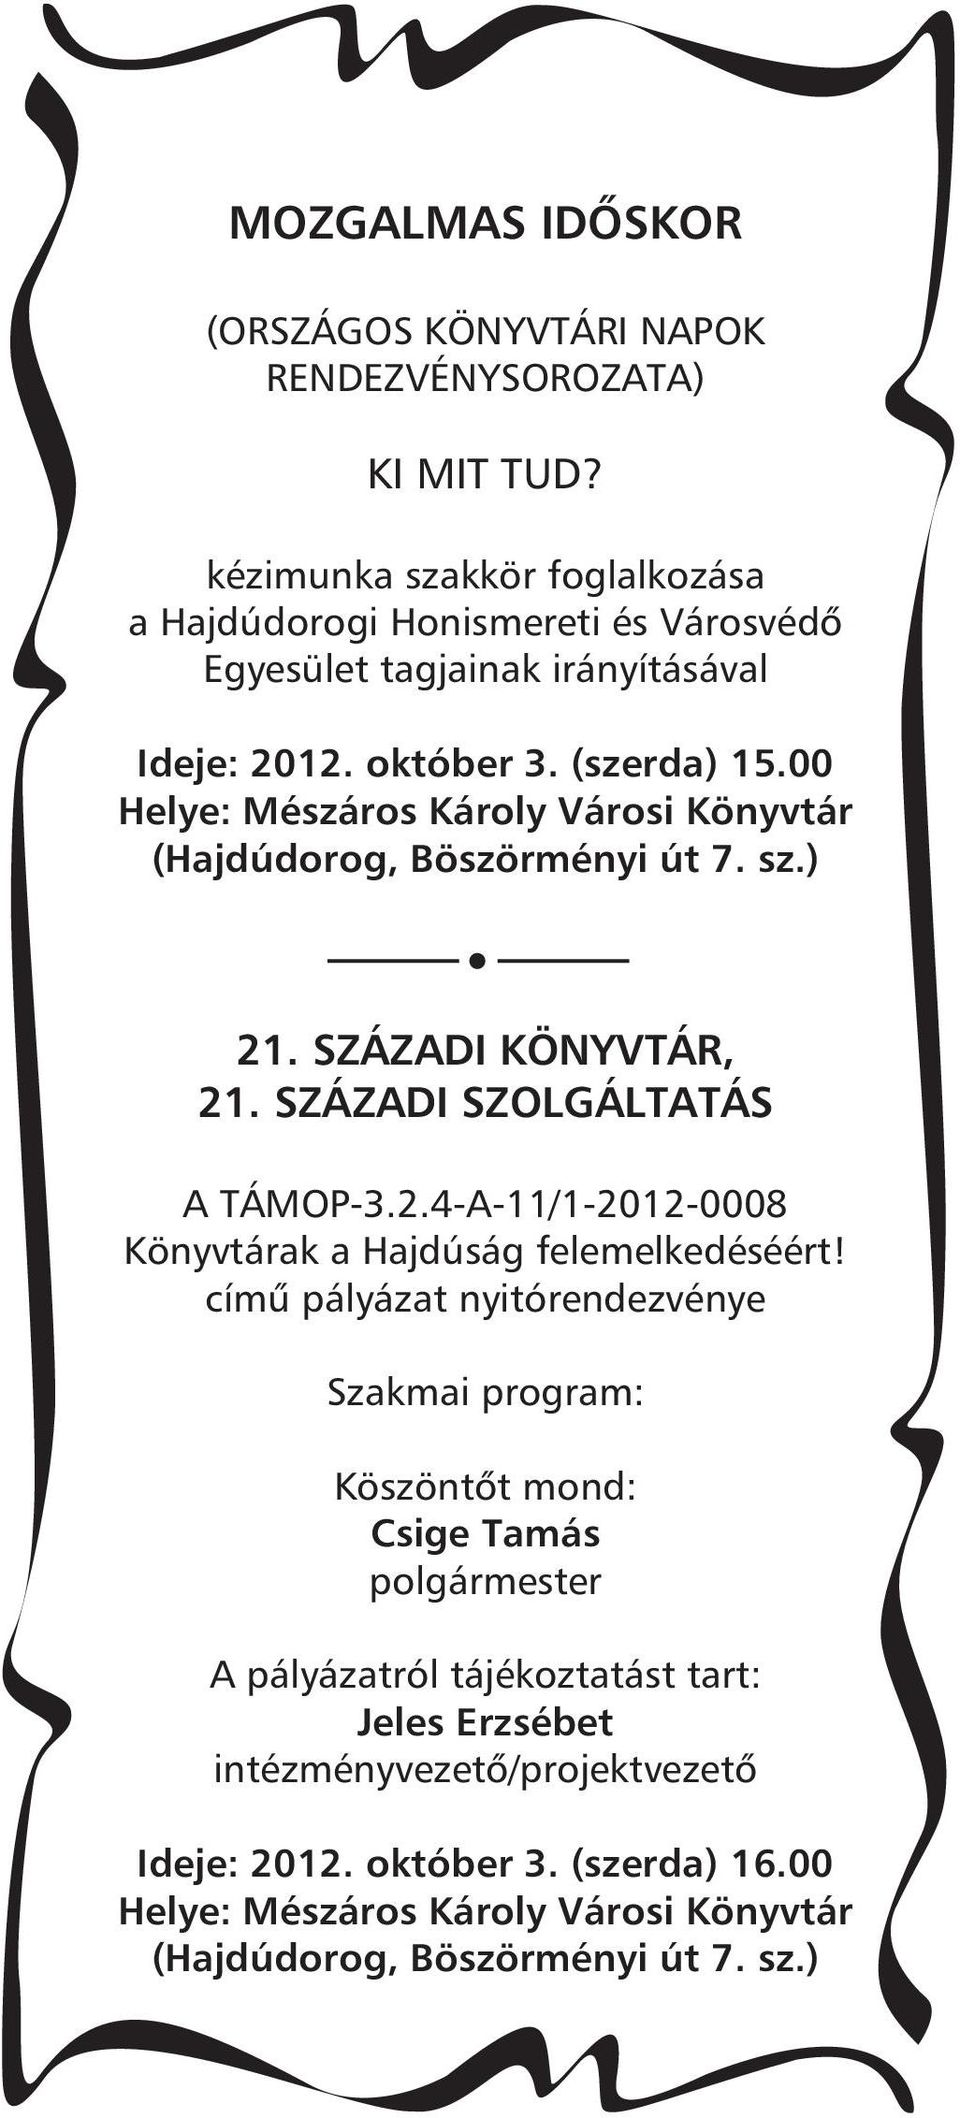 (szerda) 15.00 21. SZÁZADI KÖNYVTÁR, 21. SZÁZADI SZOLGÁLTATÁS A TÁMOP-3.2.4-A-11/1-2012-0008 Könyvtárak a Hajdúság felemelkedéséért!